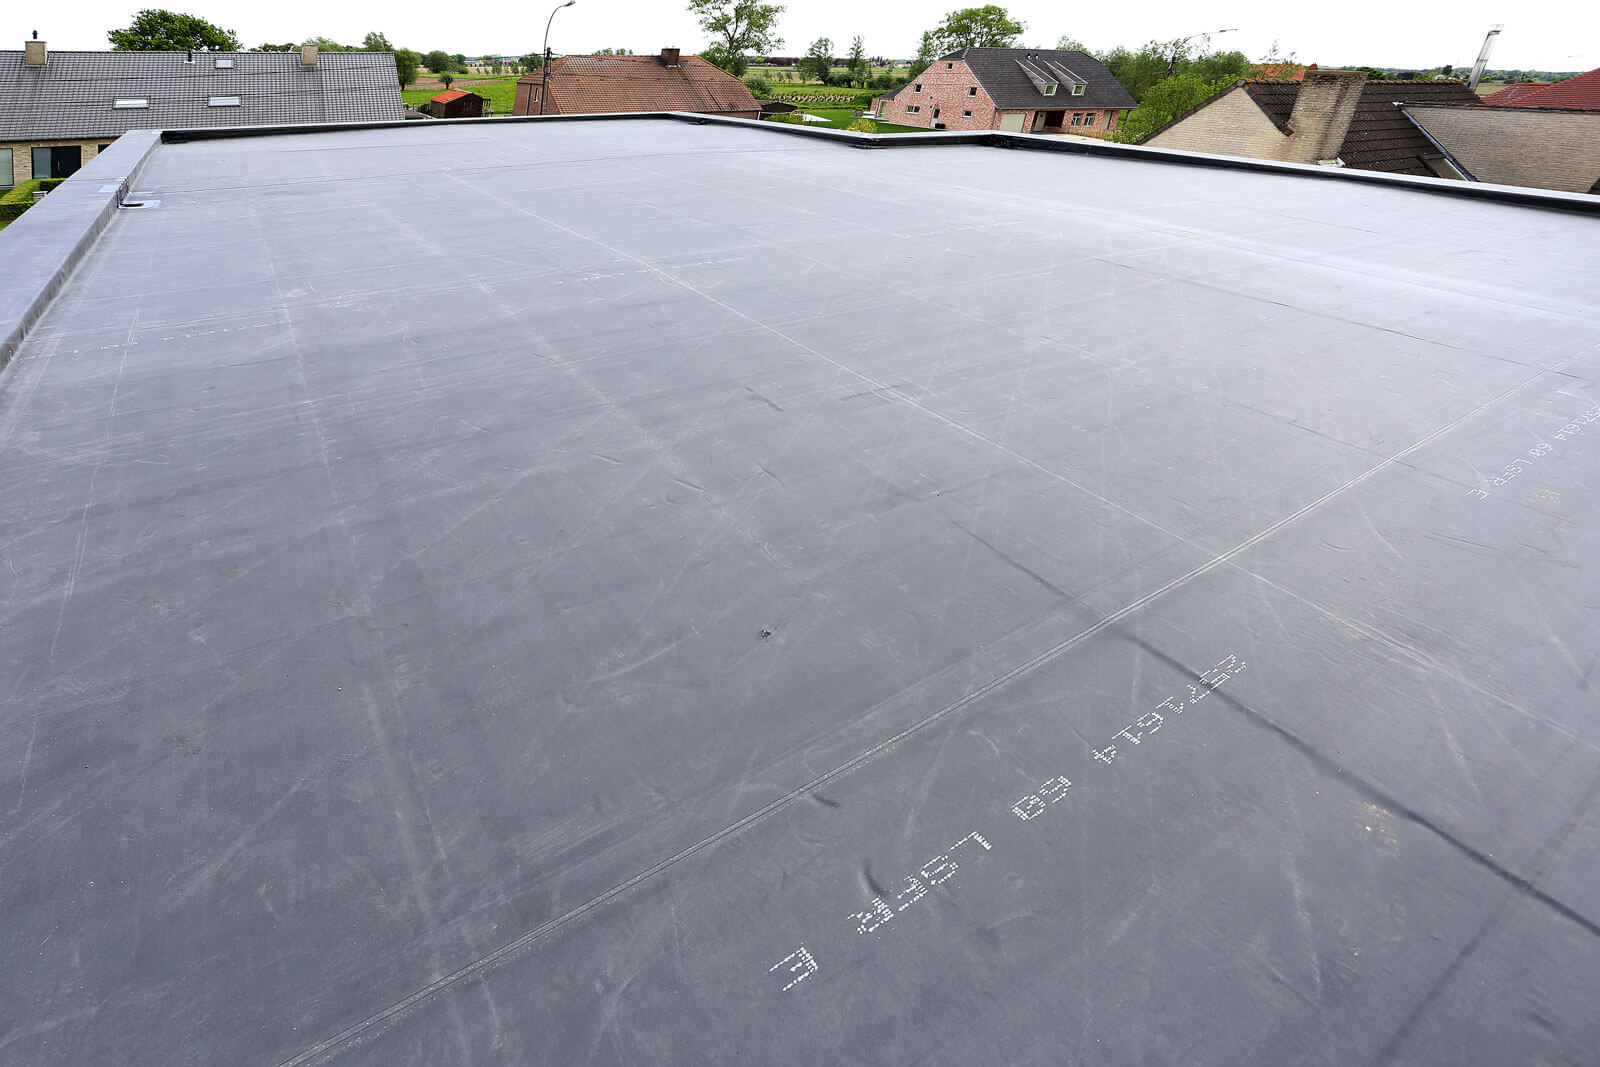 Voordelen epdm dak: op grote oppervlakten tot wel 15 x 60 meter zonder naden